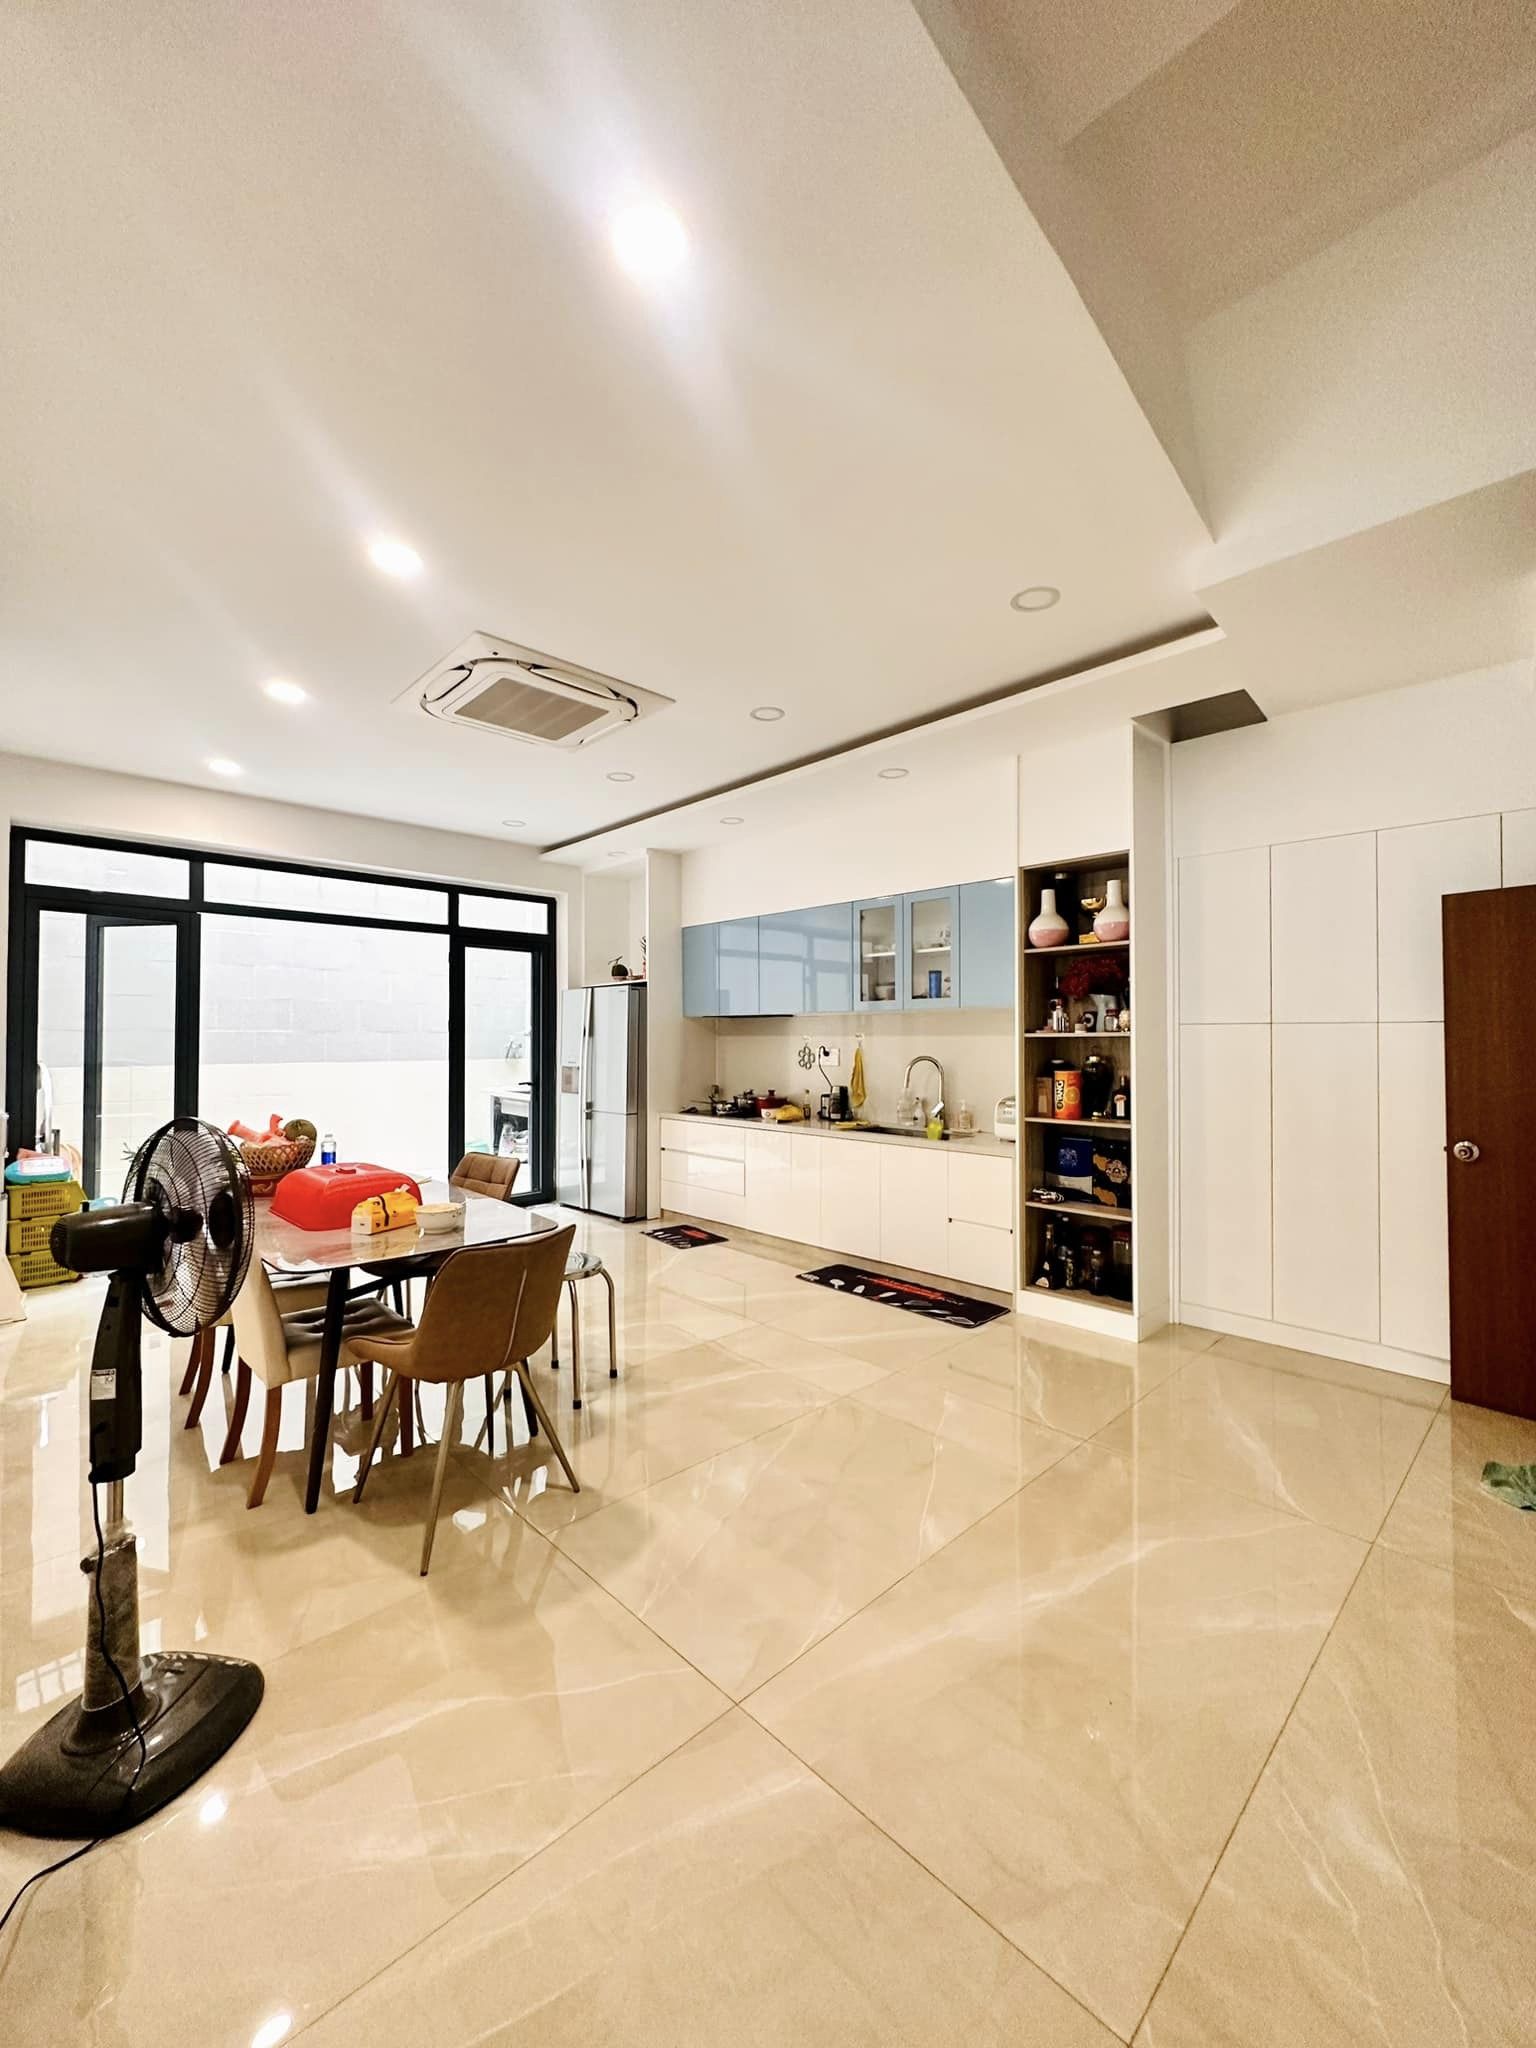 Cực rẻ 49tr/m2 gần đường Bình Long, Tân Phú, nhà còn mới, giá 4 tỷ 800